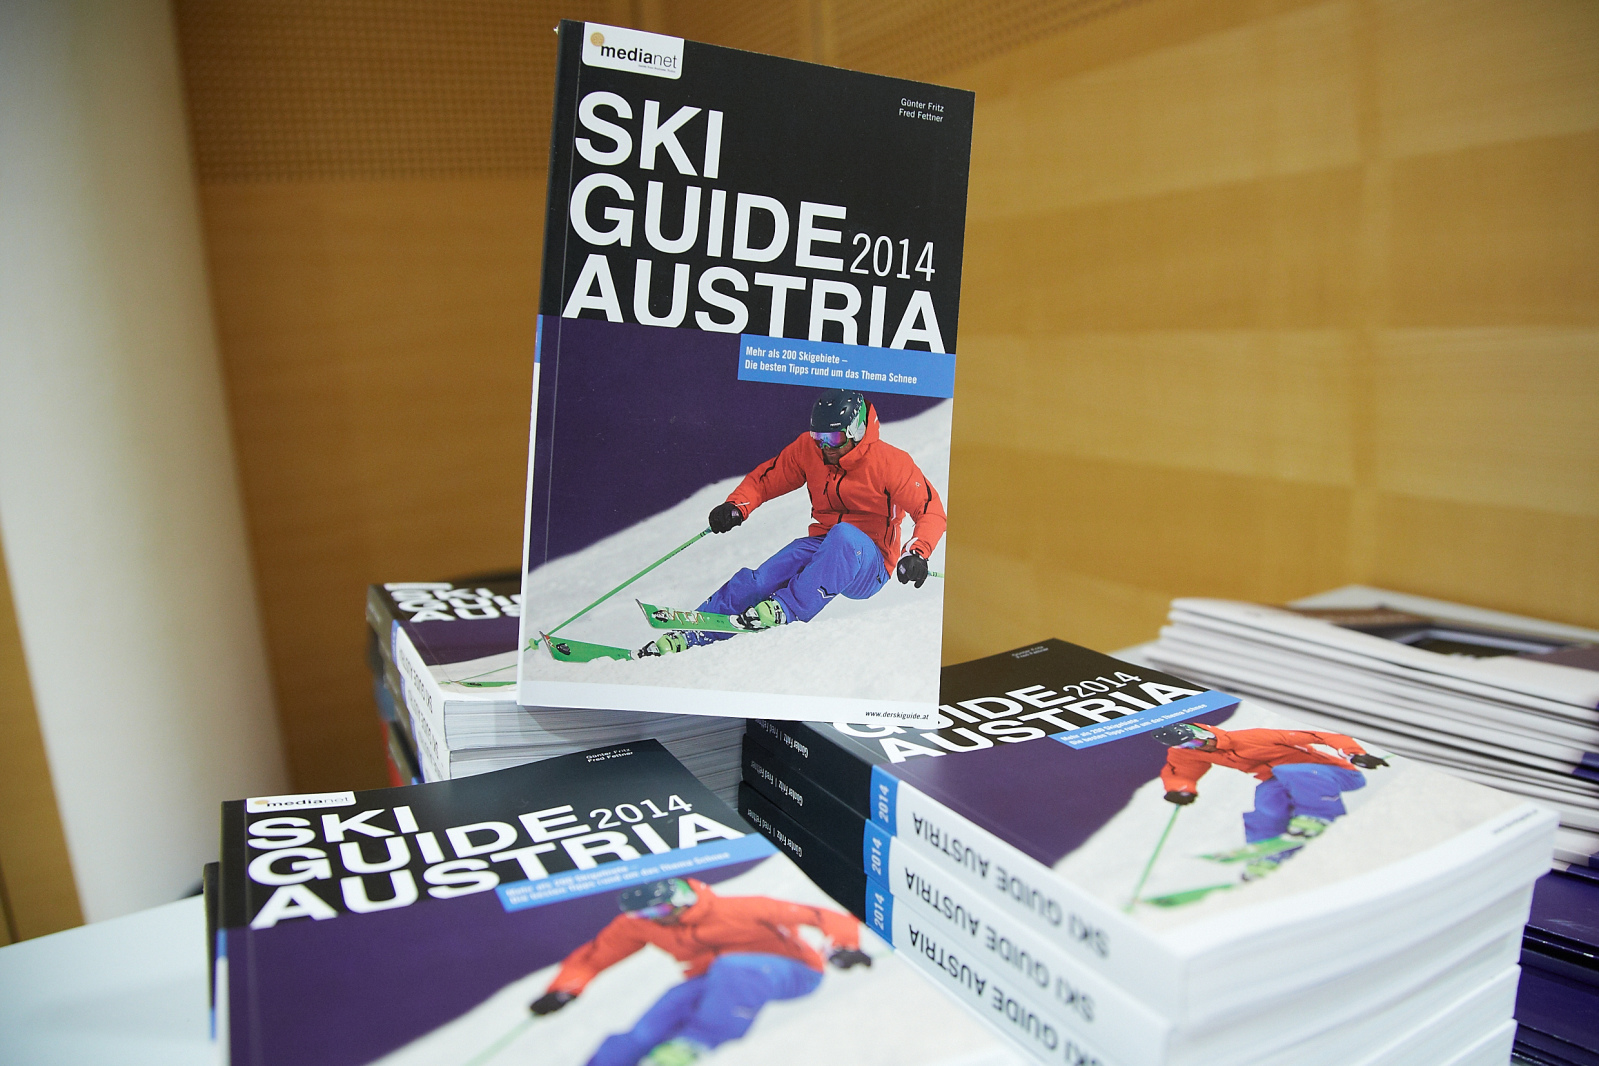 Willy Lehmann Markenagentur/Ski Guide Austria 2014